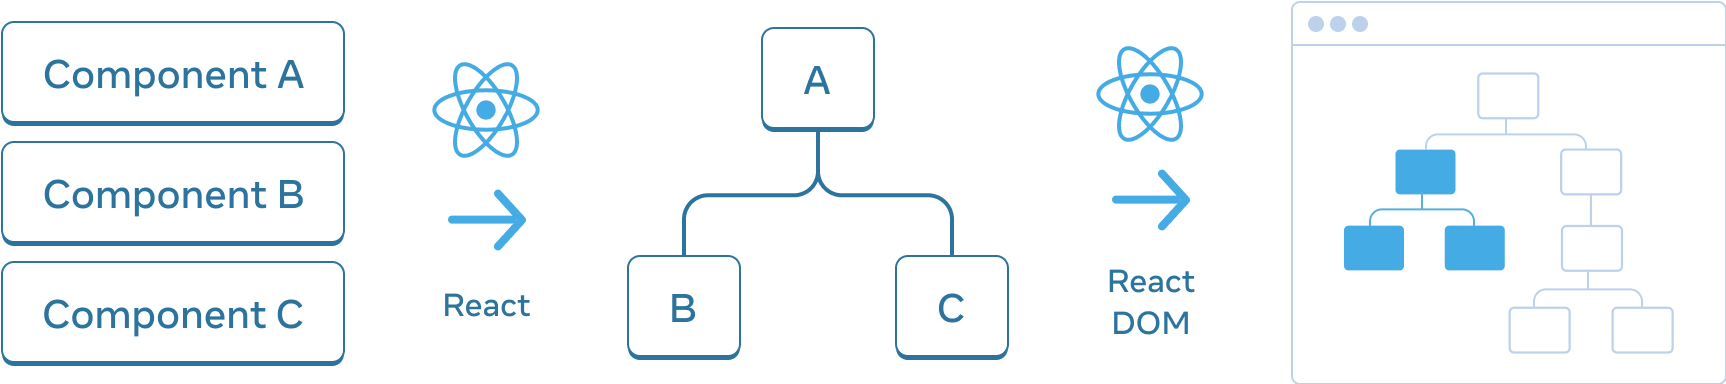 横に並んだ 3 つのセクションで構成された図。最初のセクションには、'コンポーネント A'、'コンポーネント B'、'コンポーネント C' という名前の 3 つの長方形が縦に並んでいる。次のセクションに移る矢印があり、その上には React ロゴが付いた 'React' というラベルがある。中央のセクションには、ルートに 'A'、その子に 'B'、'C' とラベル付けされたコンポーネントツリー。次のセクションへの矢印は 'React DOM' というラベルの上に React ロゴが付いている。最後のセクションではブラウザのフレームの中に 8 個のノードからなるツリーがあり、一部は中央セクションからのものであるためハイライトされている。